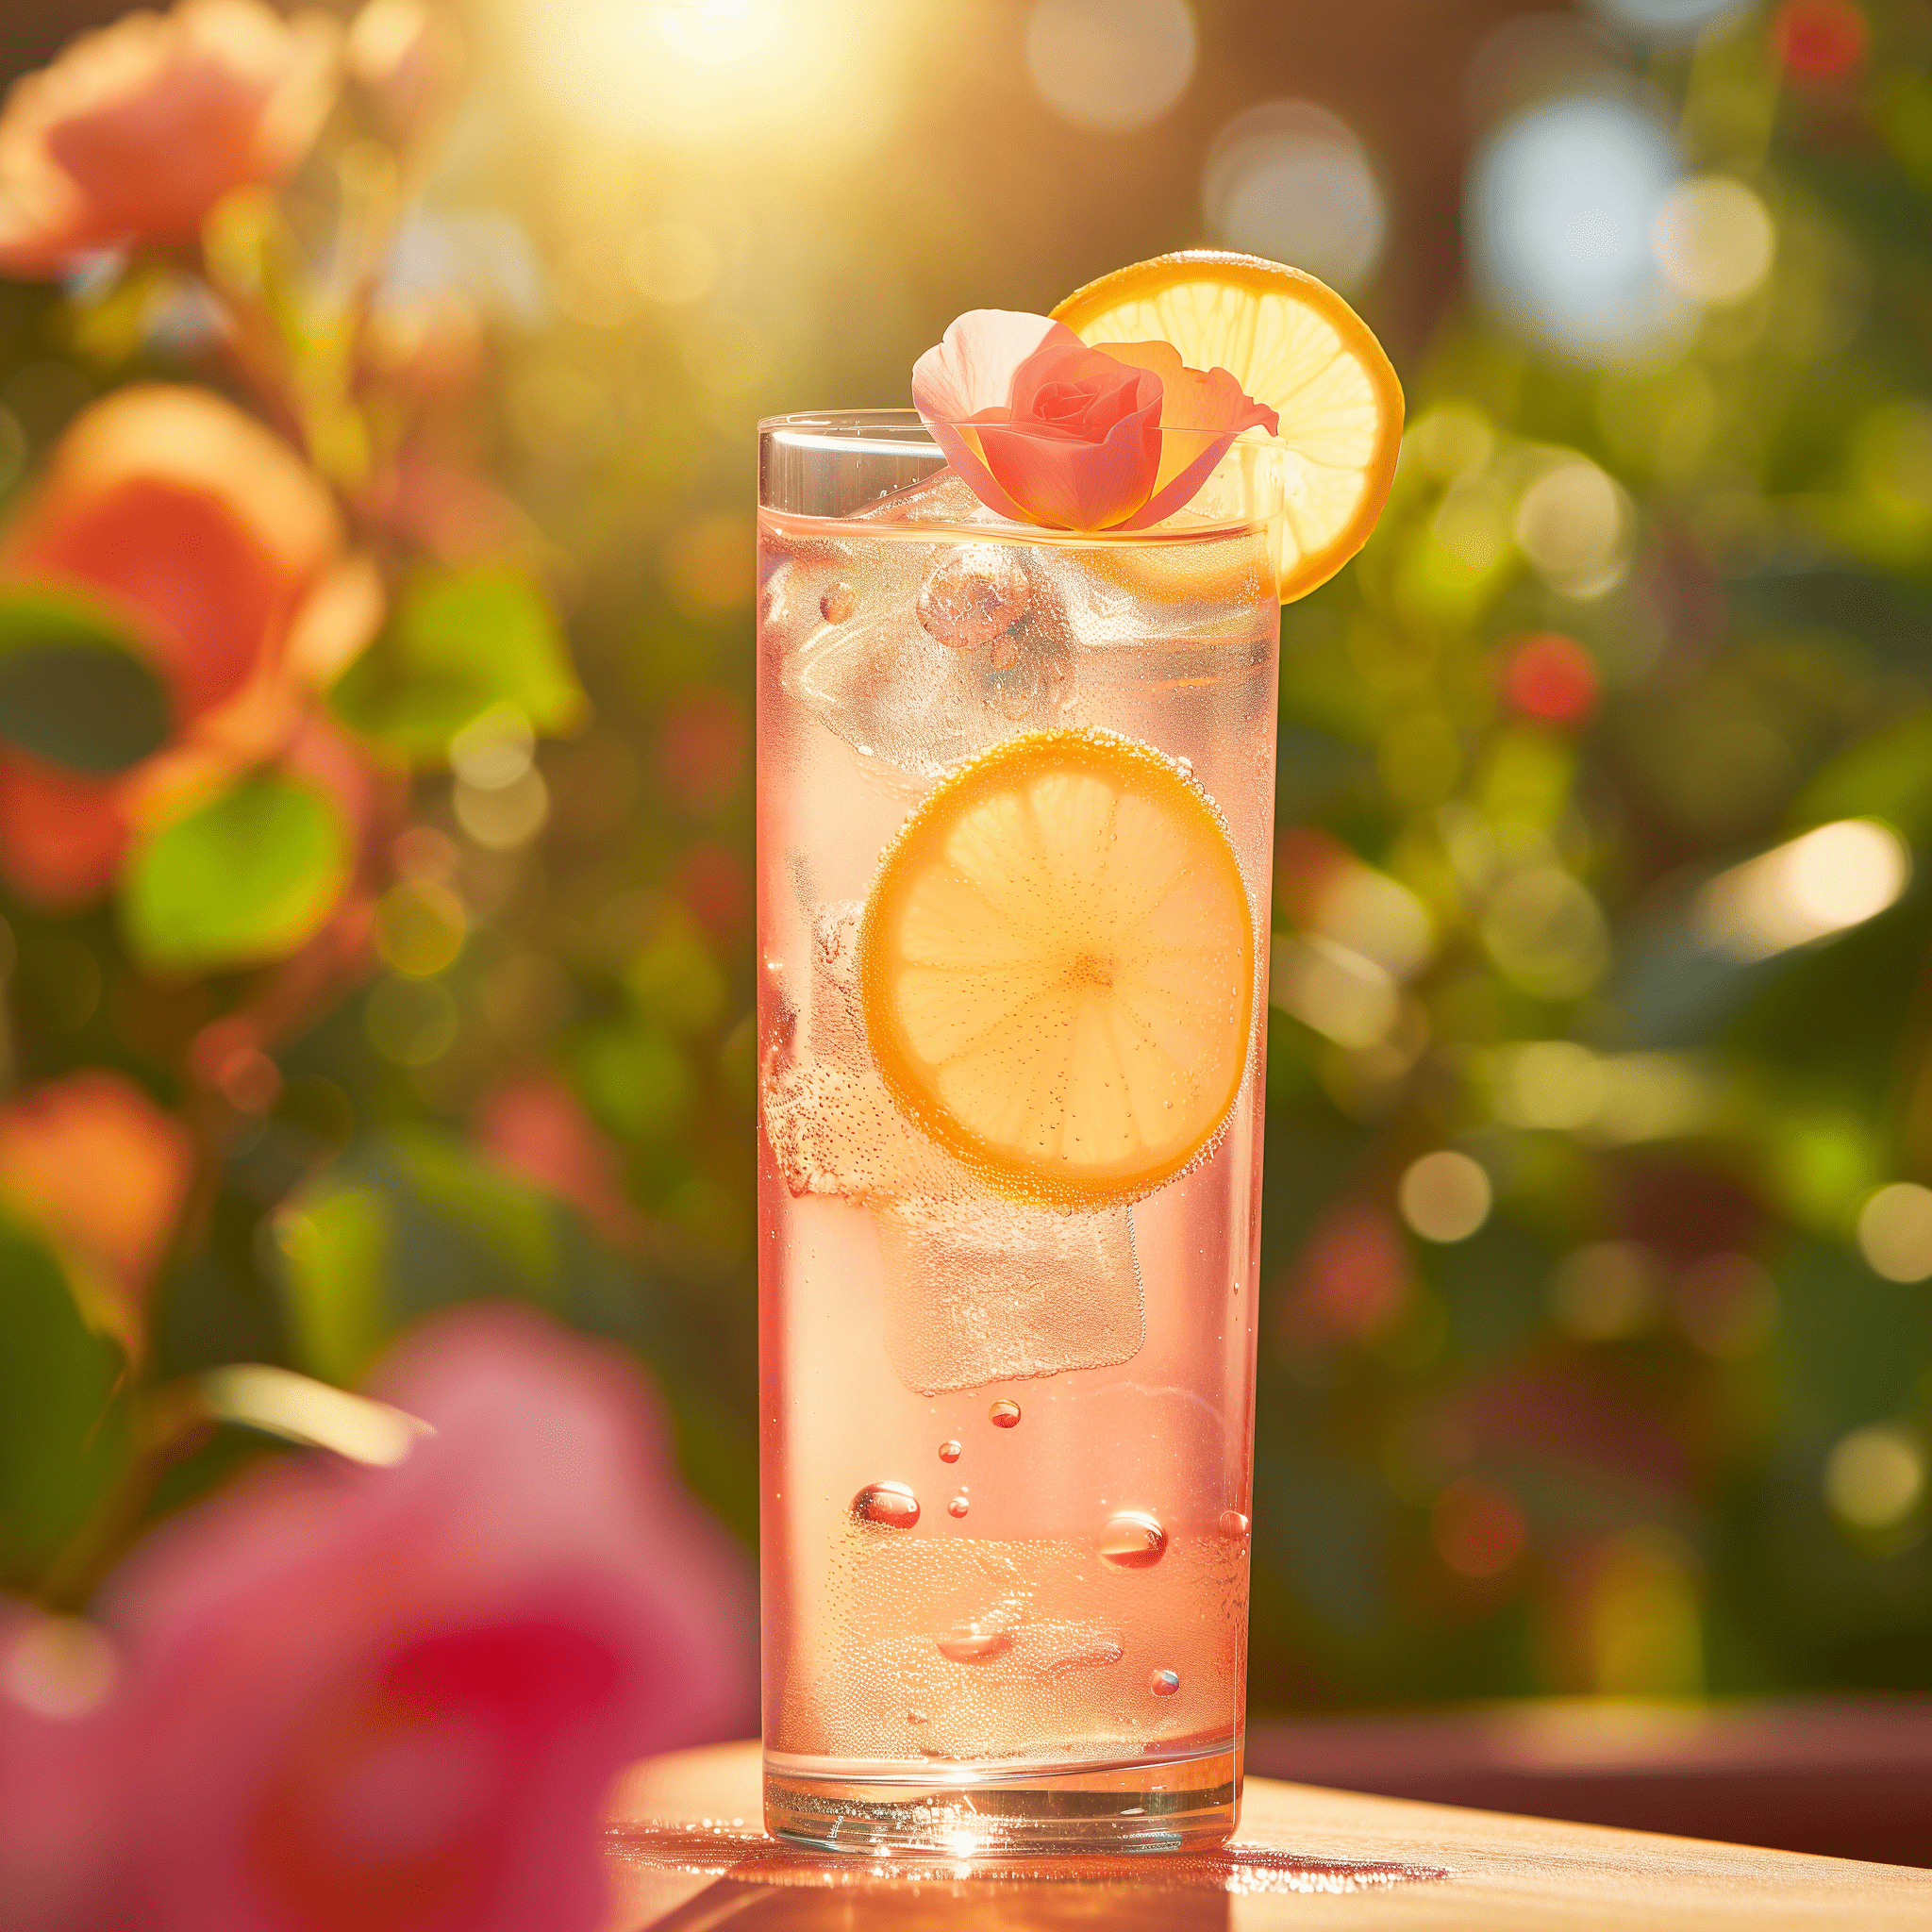 El cóctel Limonada de Rosa es una mezcla armoniosa de sabores dulces y ácidos. El jarabe de rosa aporta una dulzura fragante que se equilibra perfectamente con la acidez brillante del jugo de limón fresco. El agua con gas añade una textura burbujeante que hace que la bebida sea ligera y refrescante.